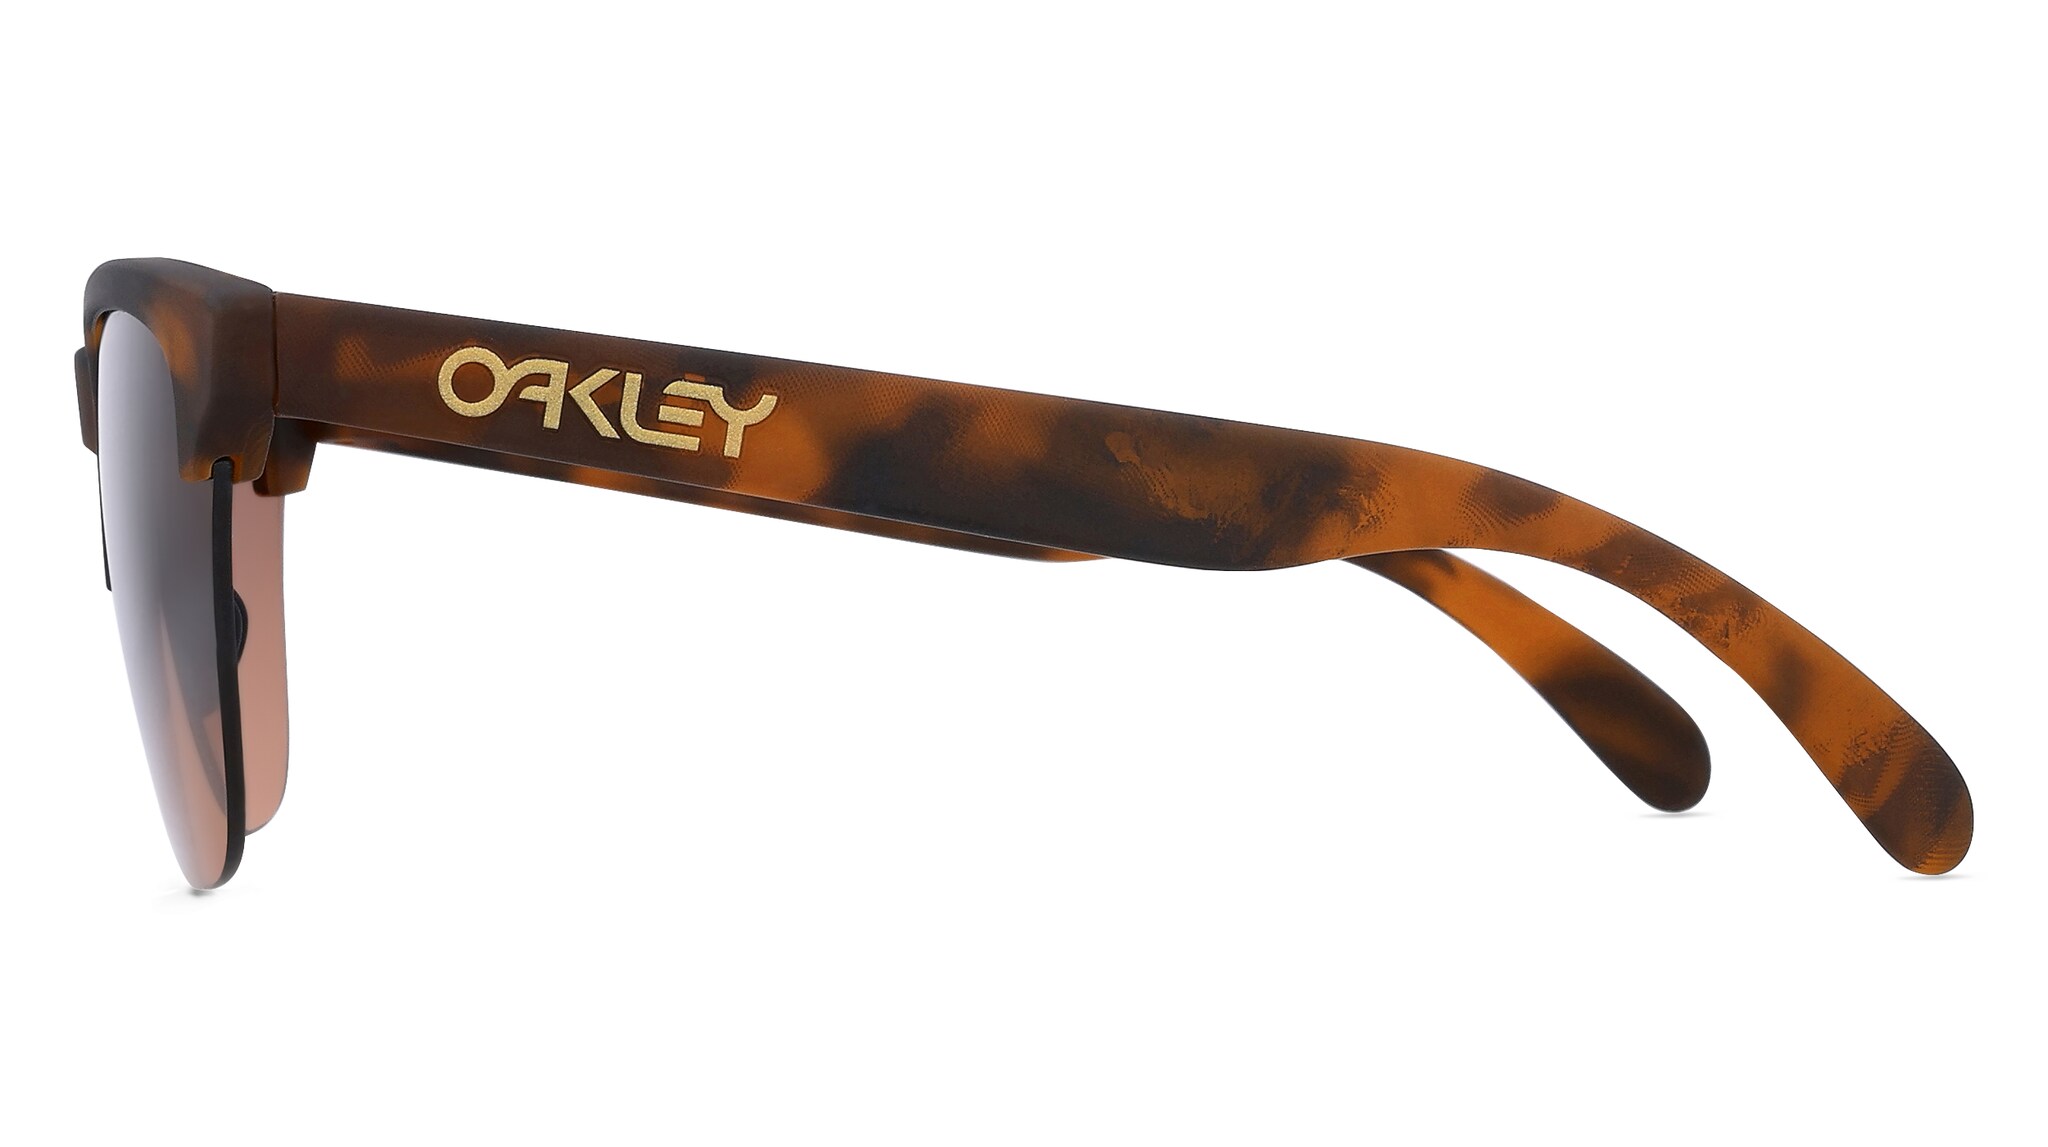 Oakley OO9374 FROGSKINS LITE